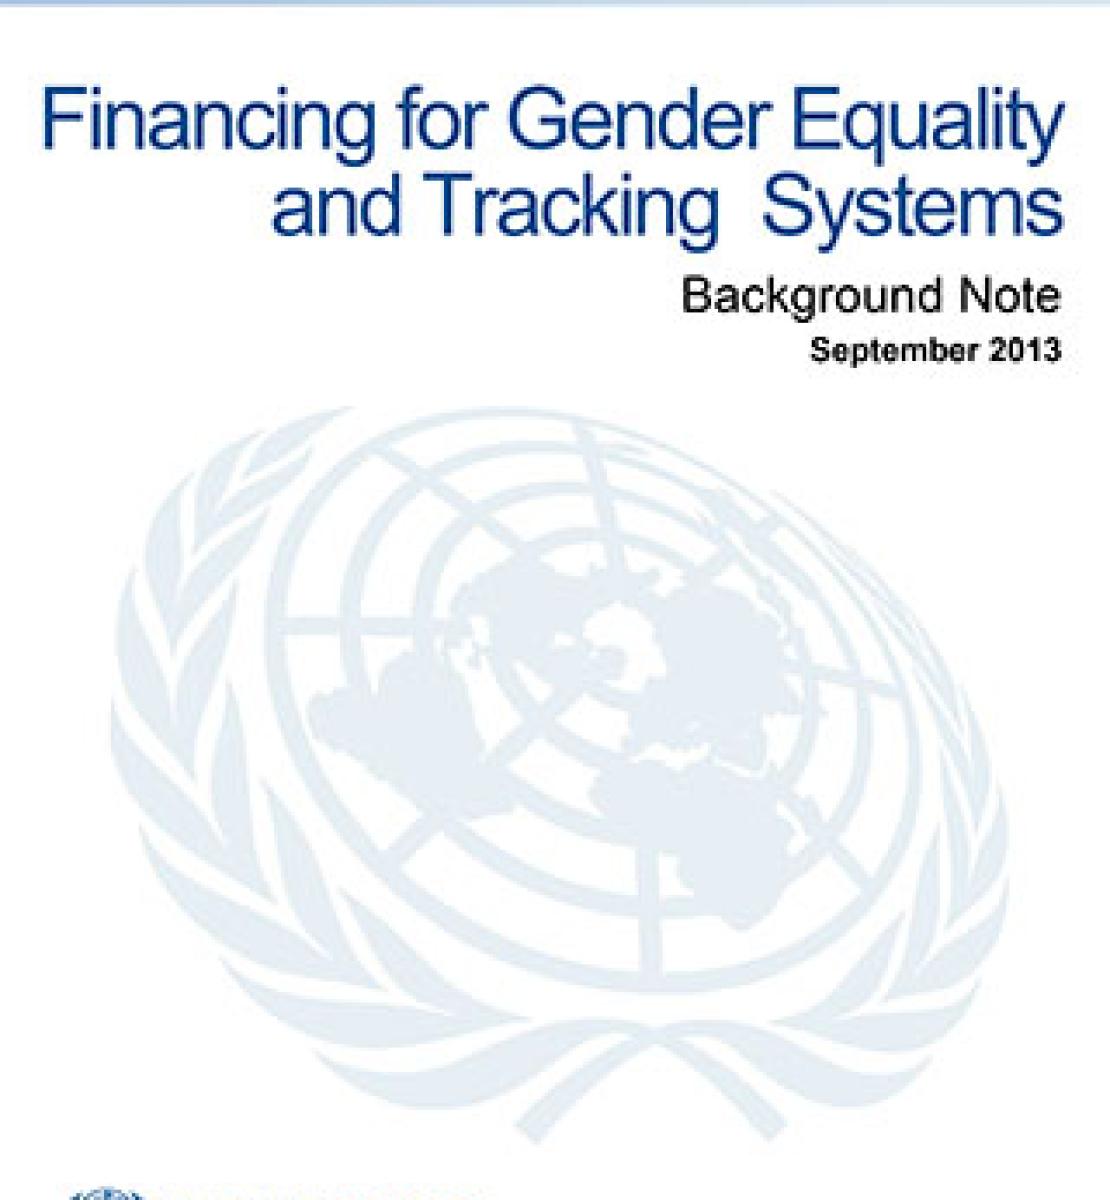 为性别平等和跟踪系统融资——背景说明